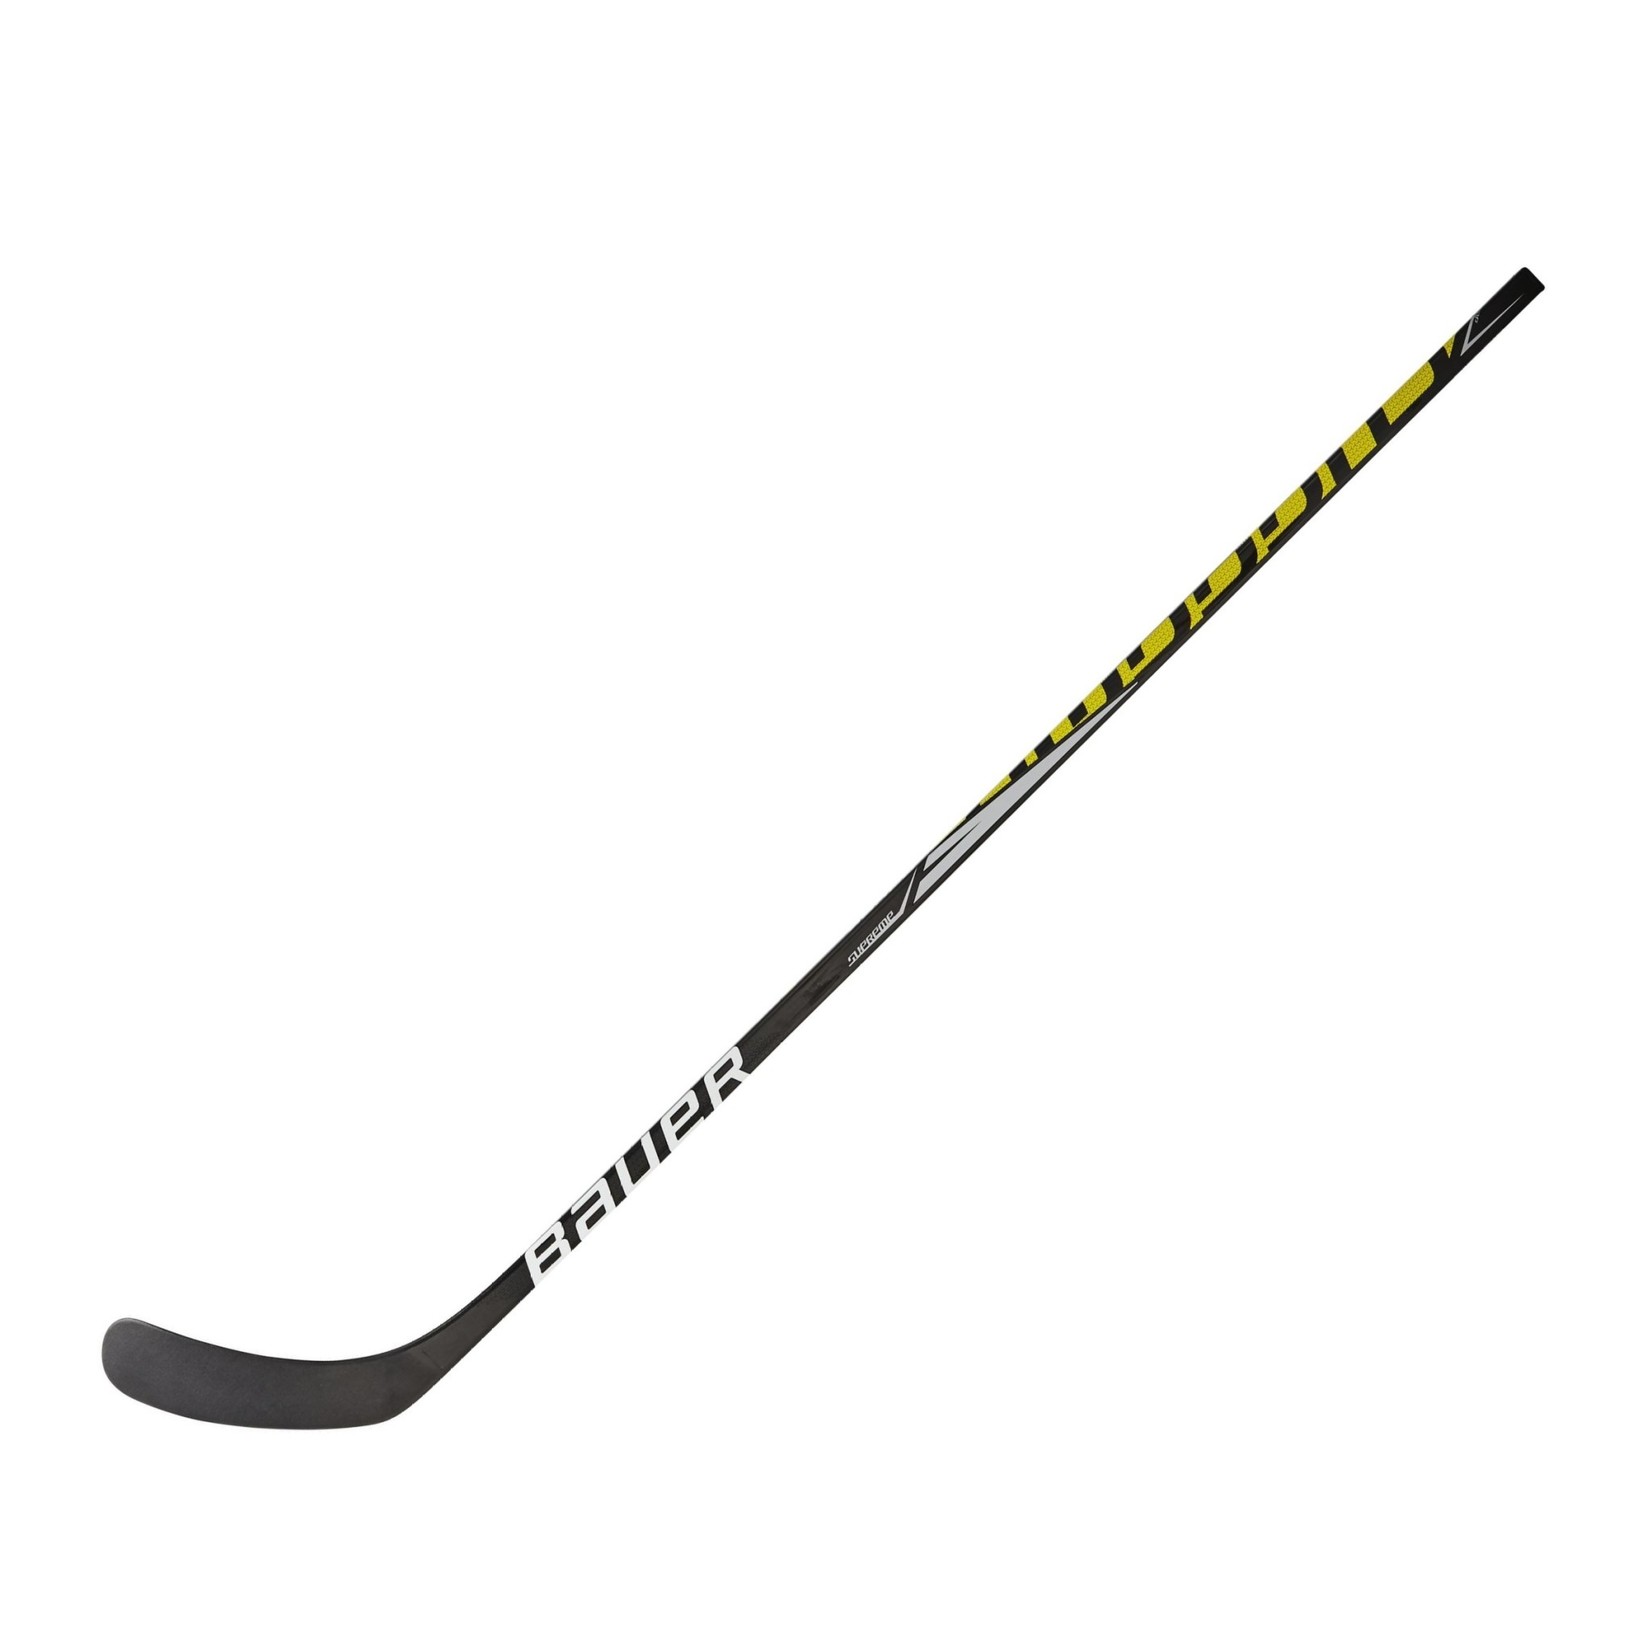 Bauer Bauer Supreme S37 - Hockey Stick Senior